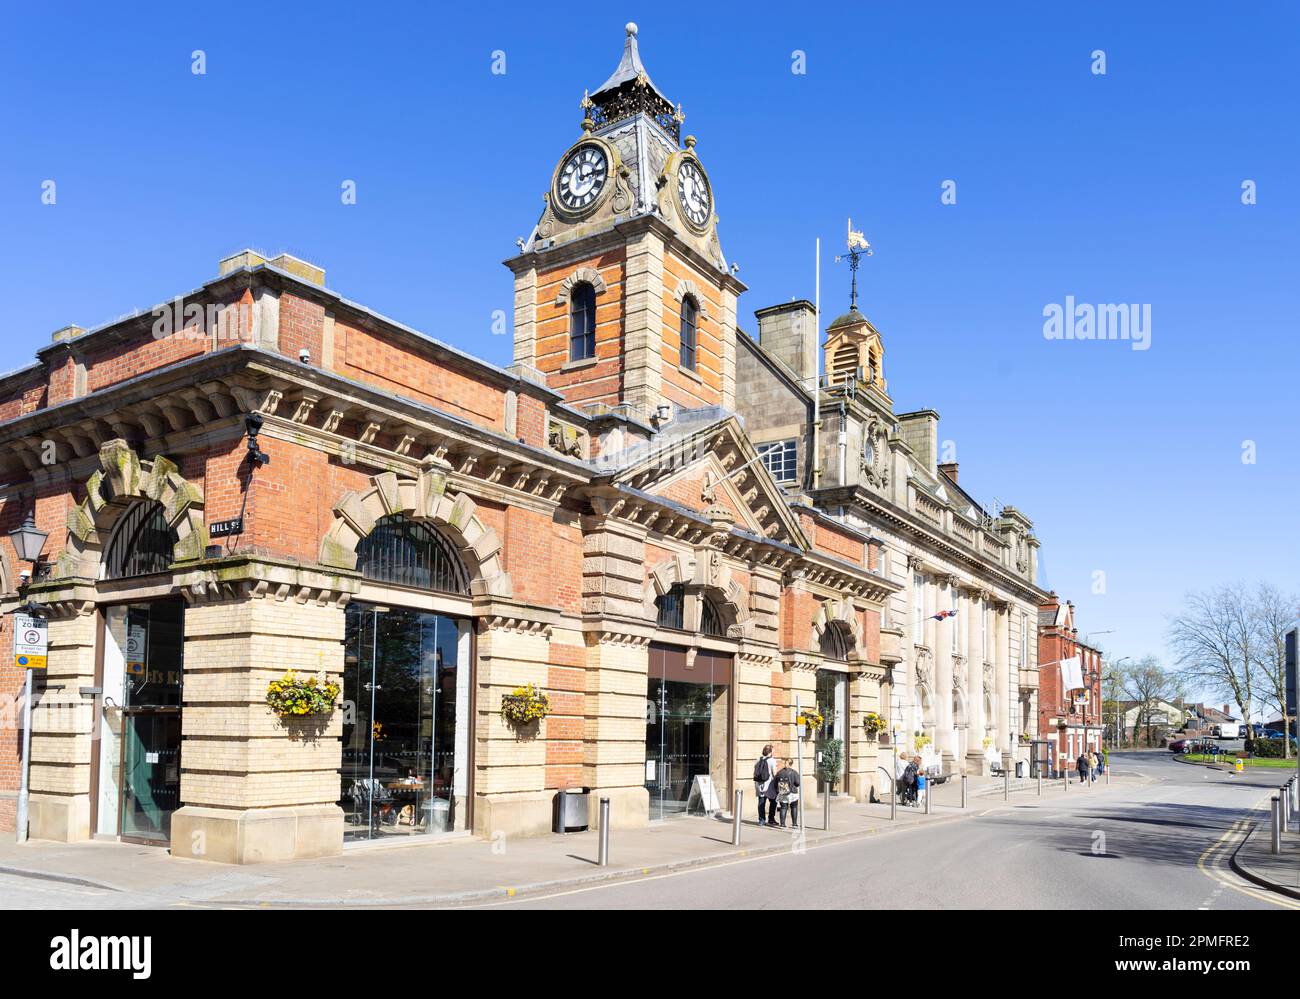 Crewe Cheshire The Market Hall and Town Hall Crewe Cheshire England UK GB Europe Stock Photo